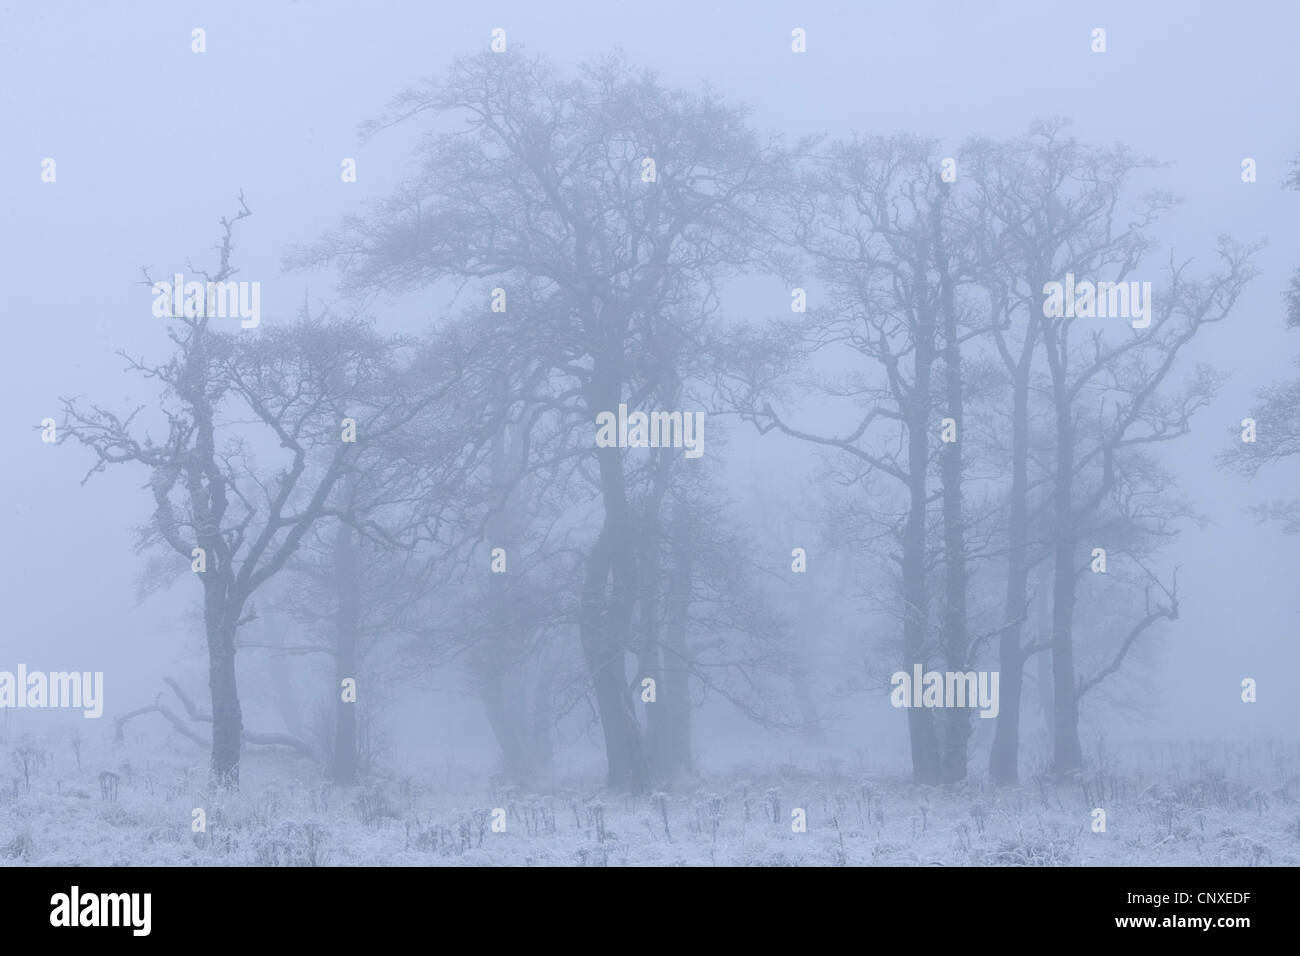 Ontani neri, ontano nero, europeo (ontano Alnus glutinosa), grove in inverno la nebbia, Regno Unito, Scozia, Cairngorms National Park Foto Stock